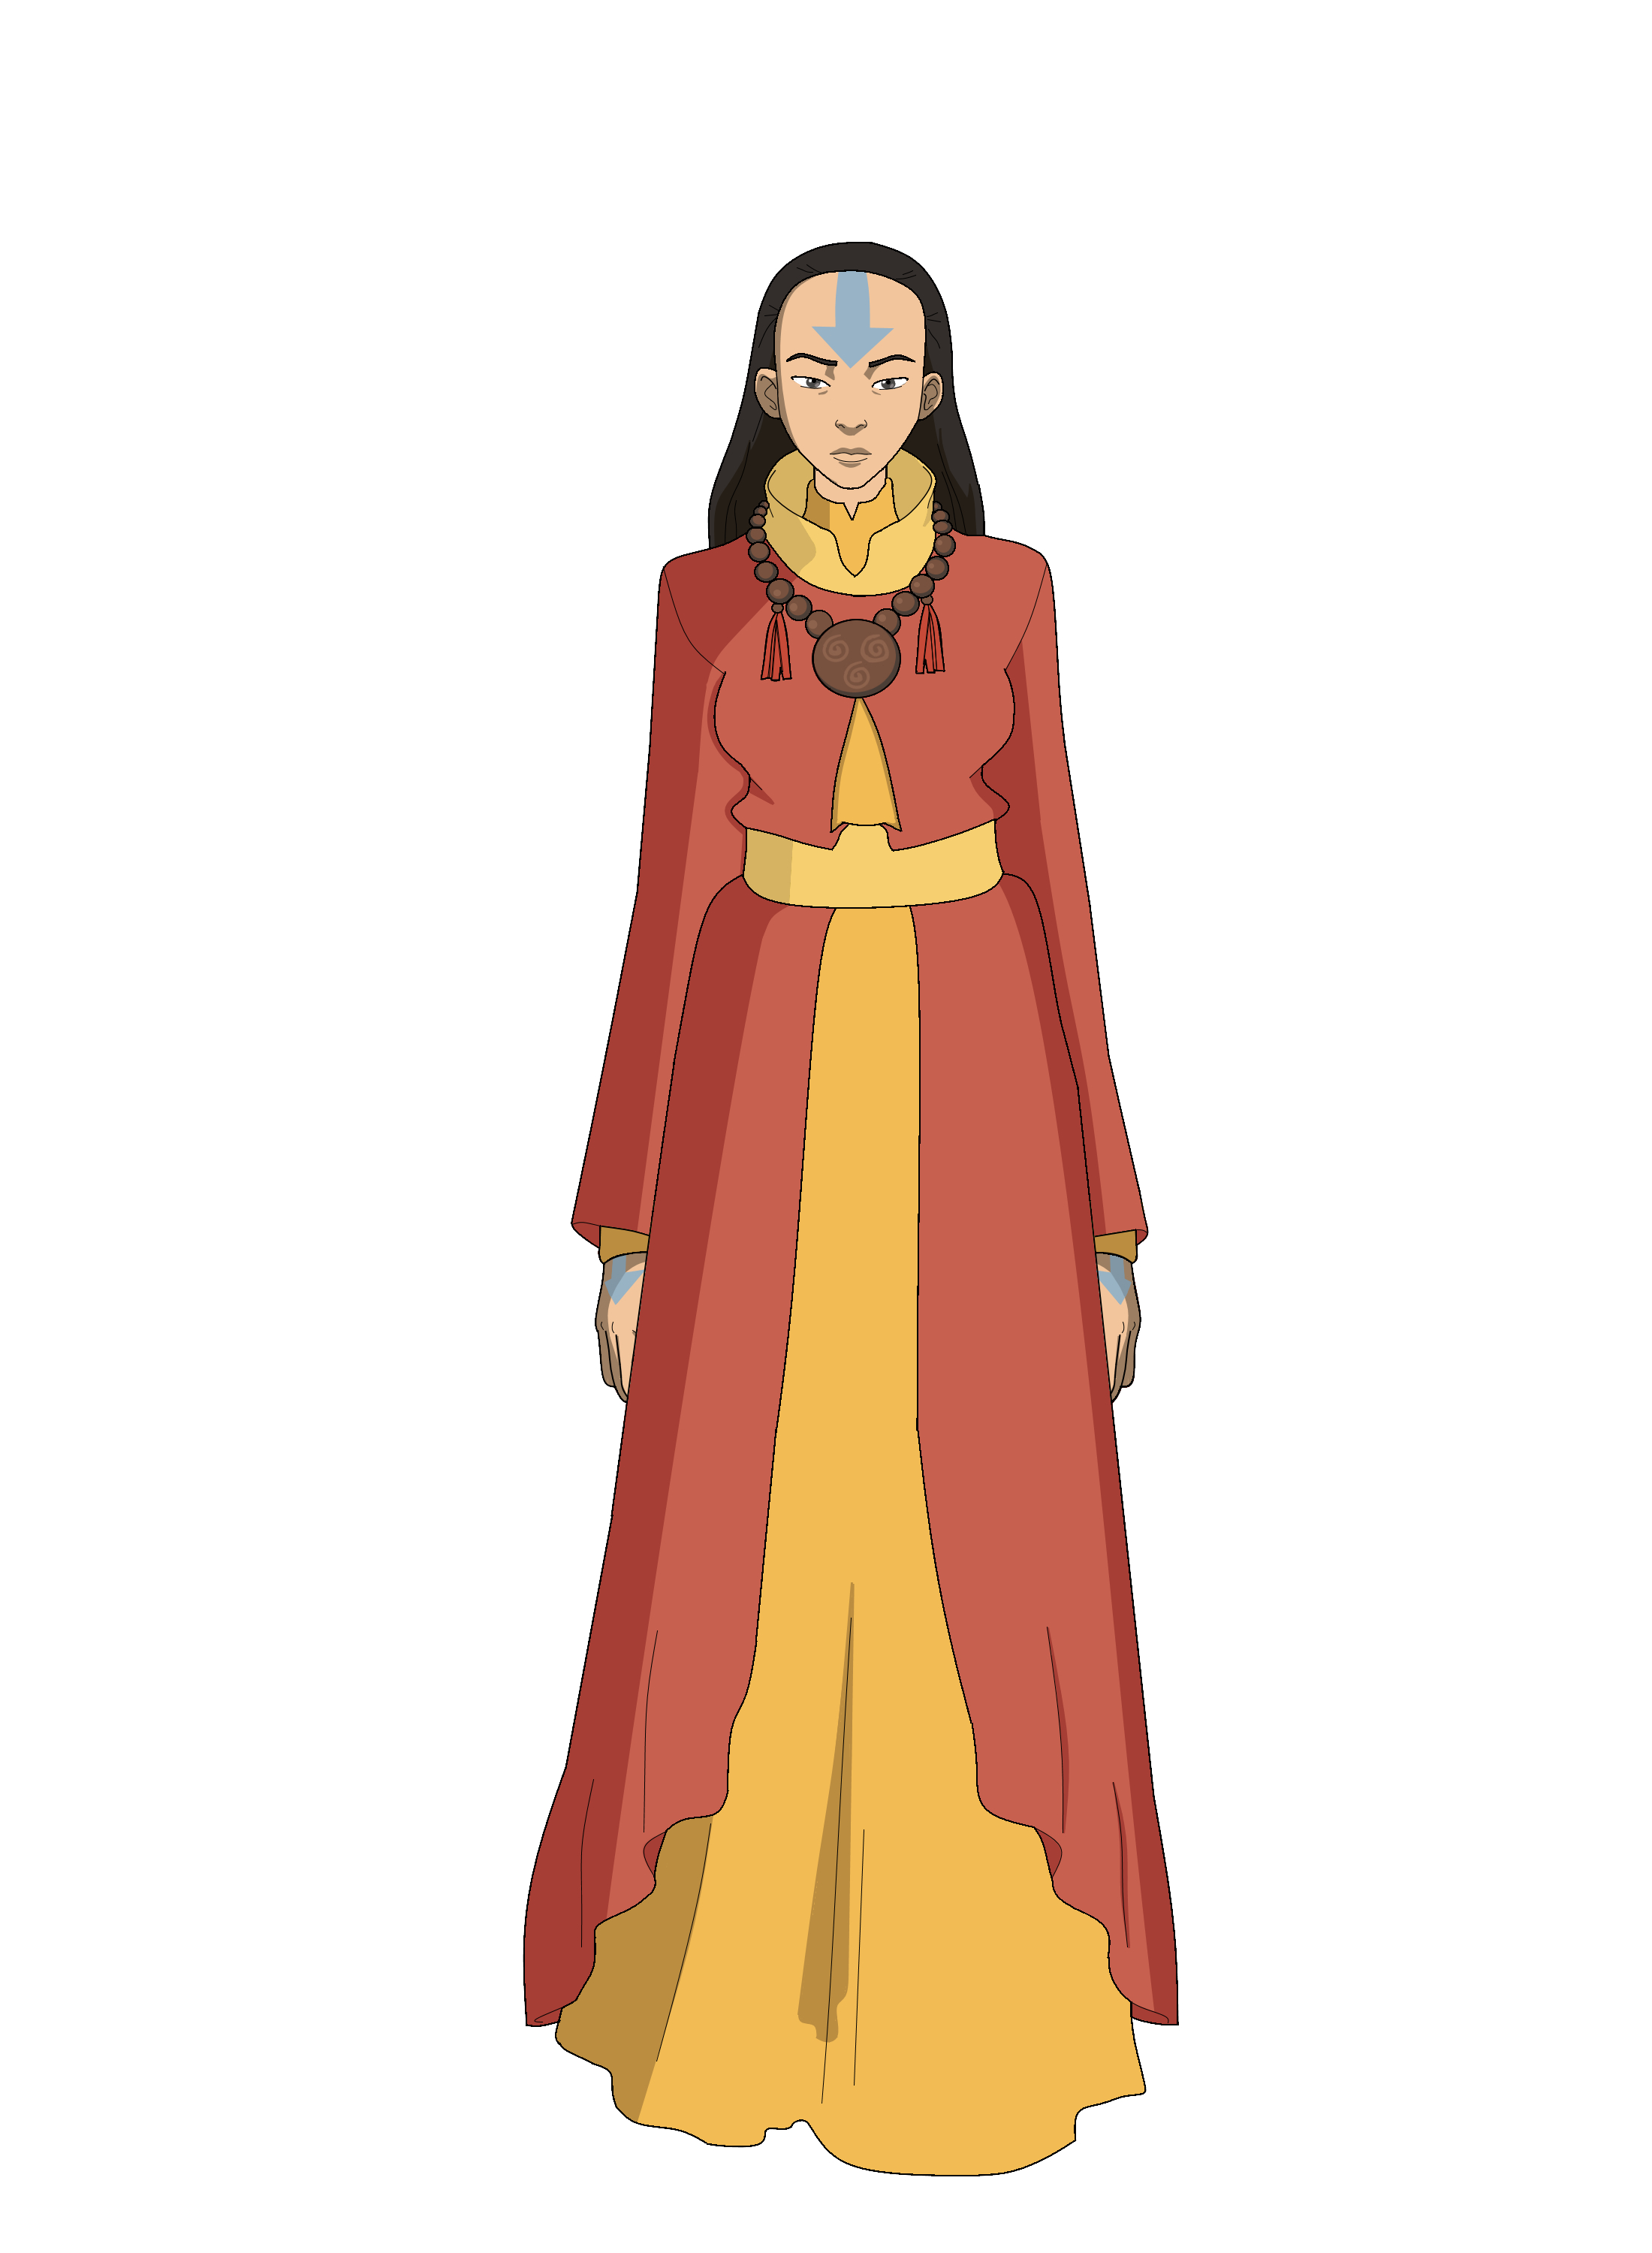 Avatar Yangchen by ForgottenRealmsArt on DeviantArt